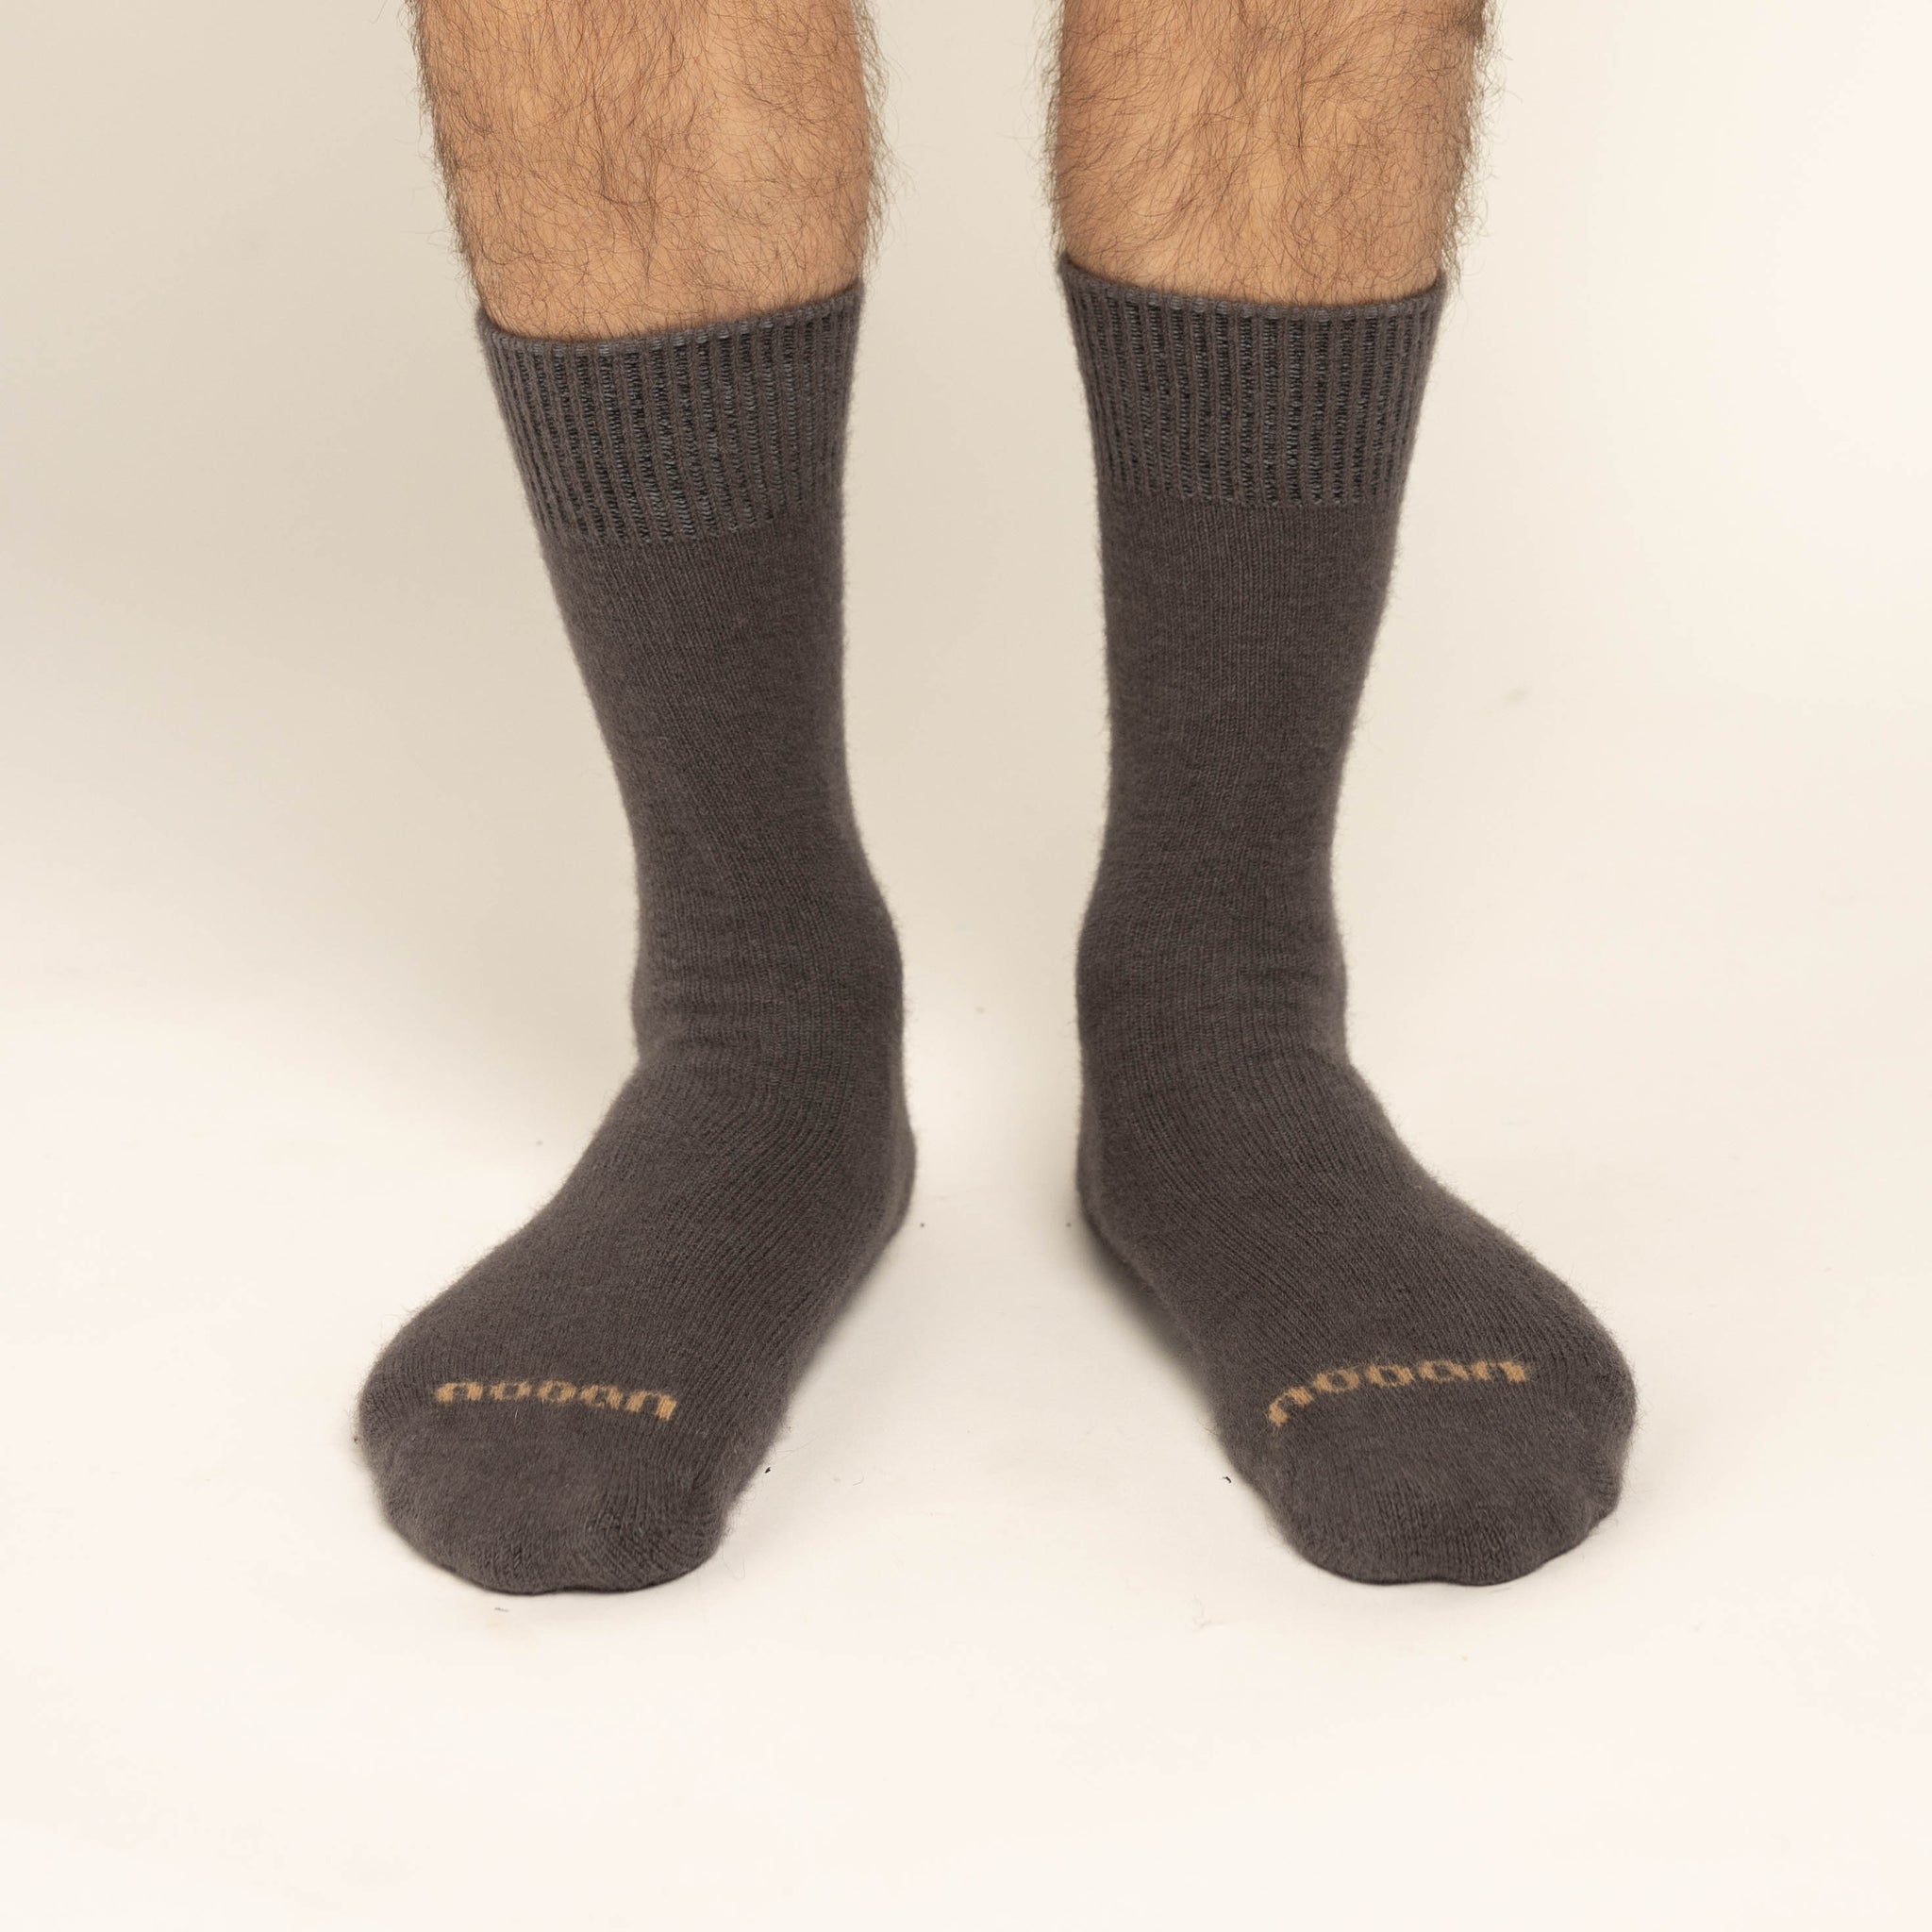 Possum Merino Wool PIHA Socks, Poppy Seed Men